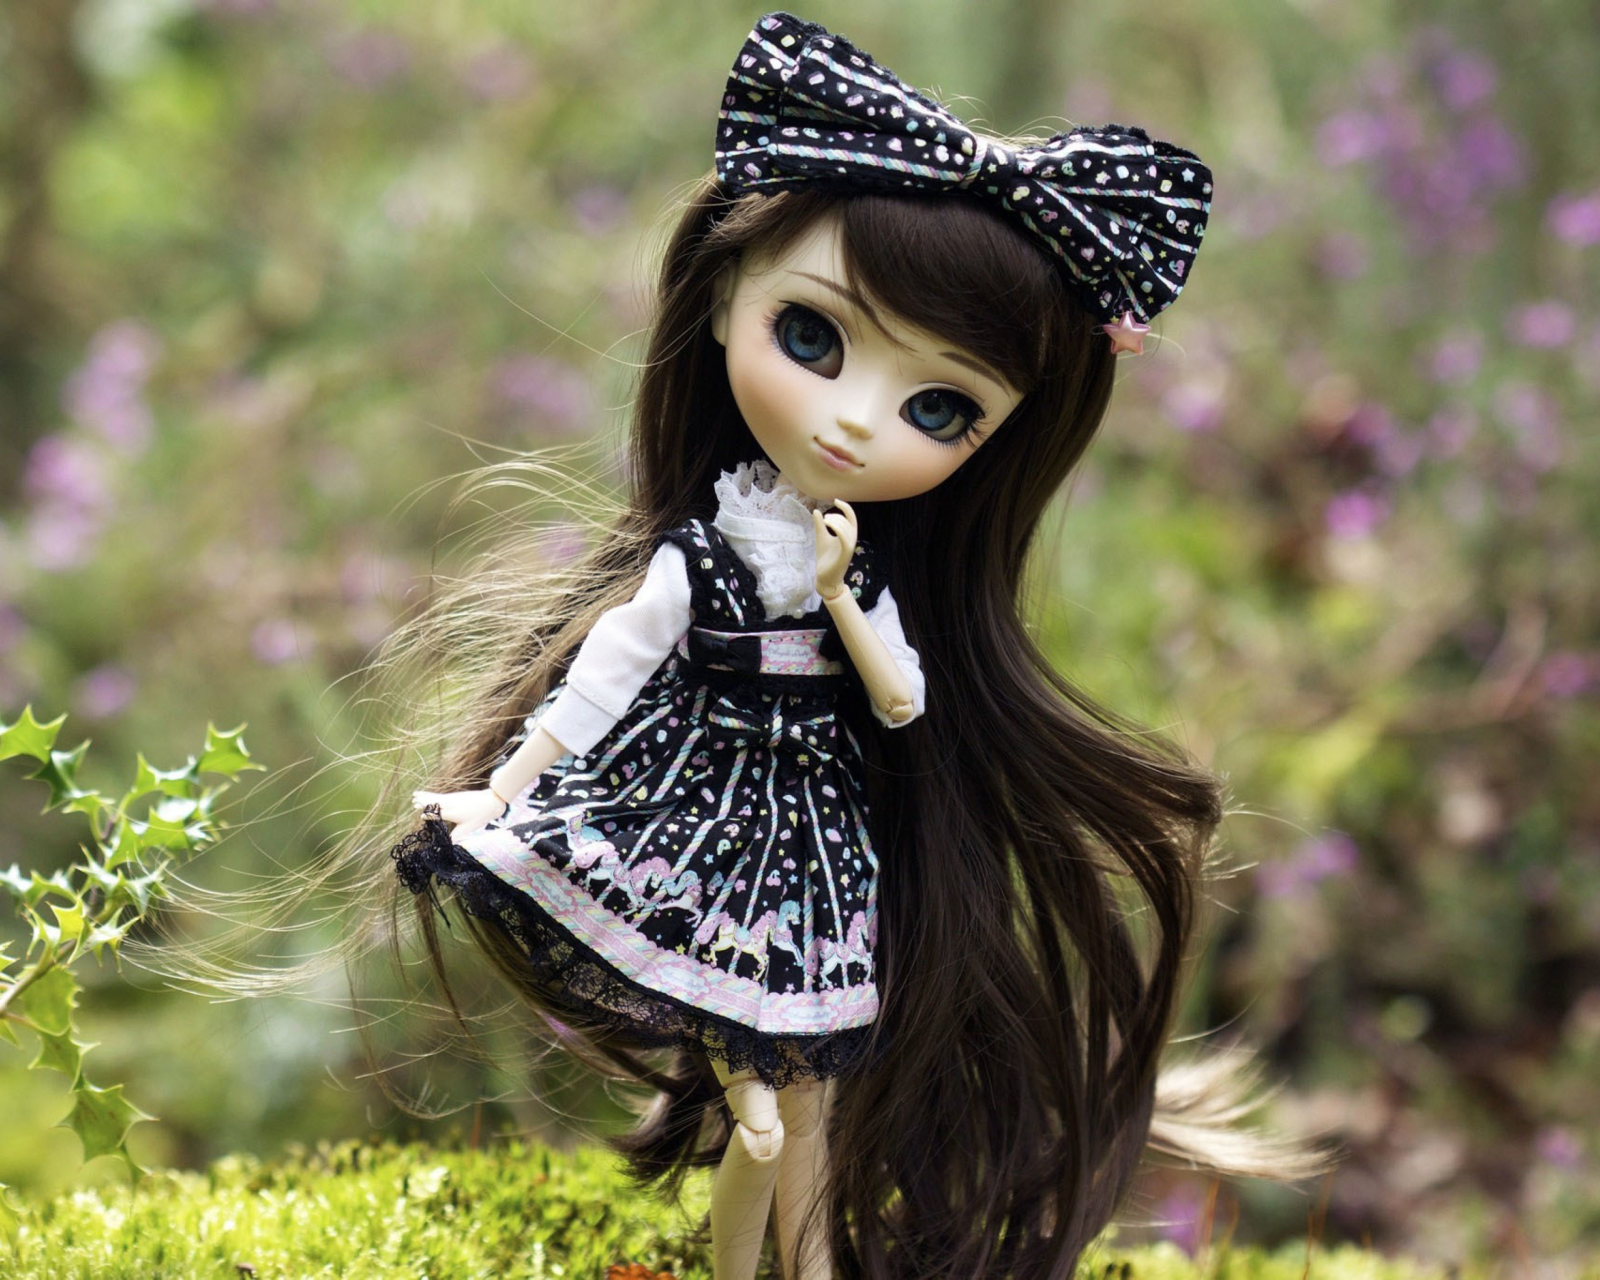 Cute Doll With Dark Hair And Black Bow screenshot #1 1600x1280